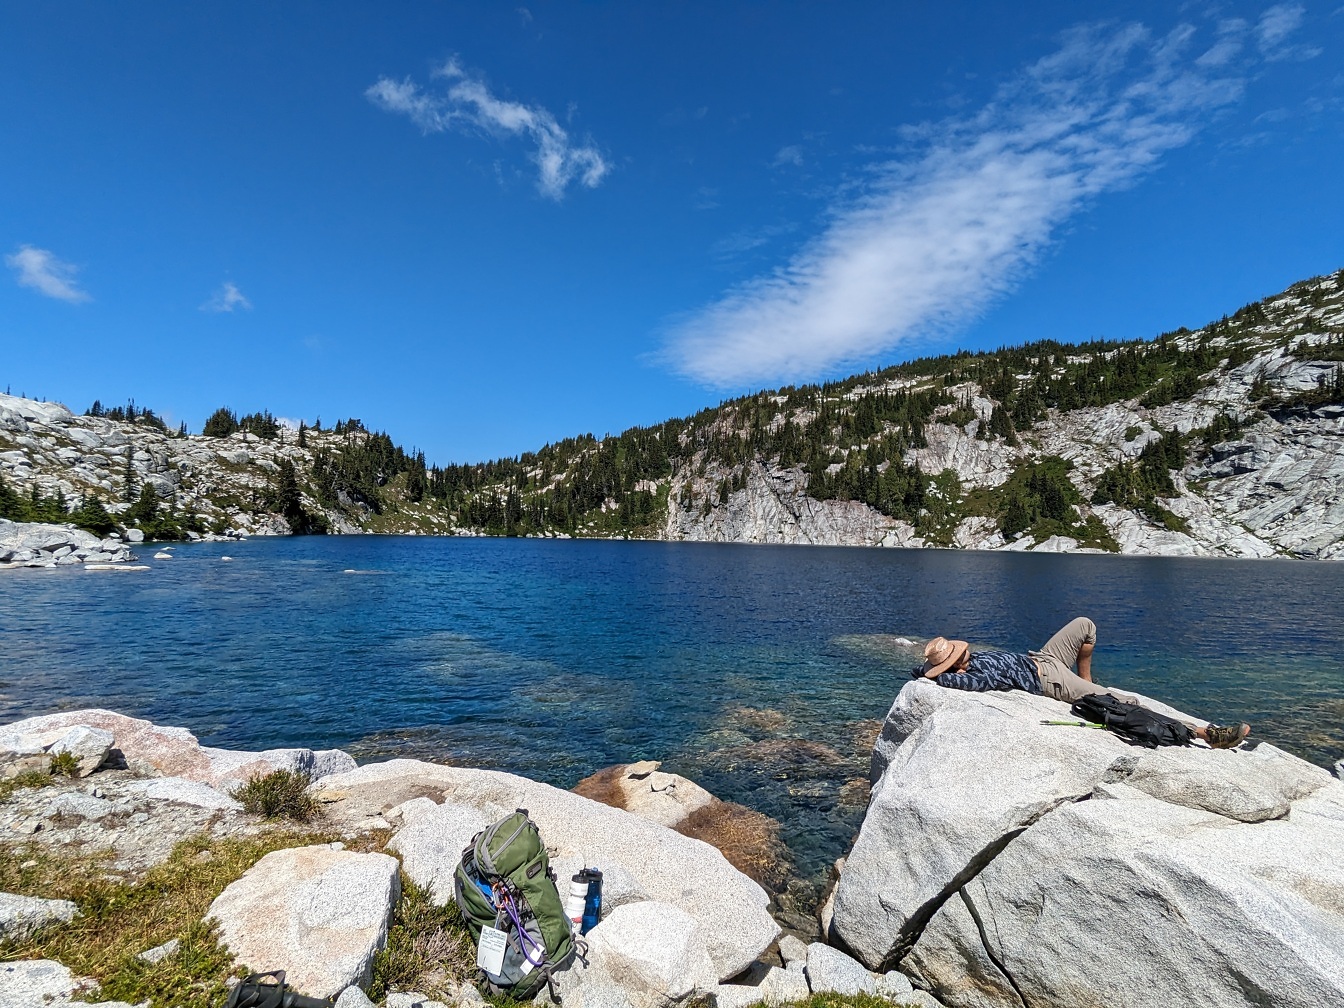 Turista odpočívající na skalách na břehu jezera majestátní panoramatická krajina